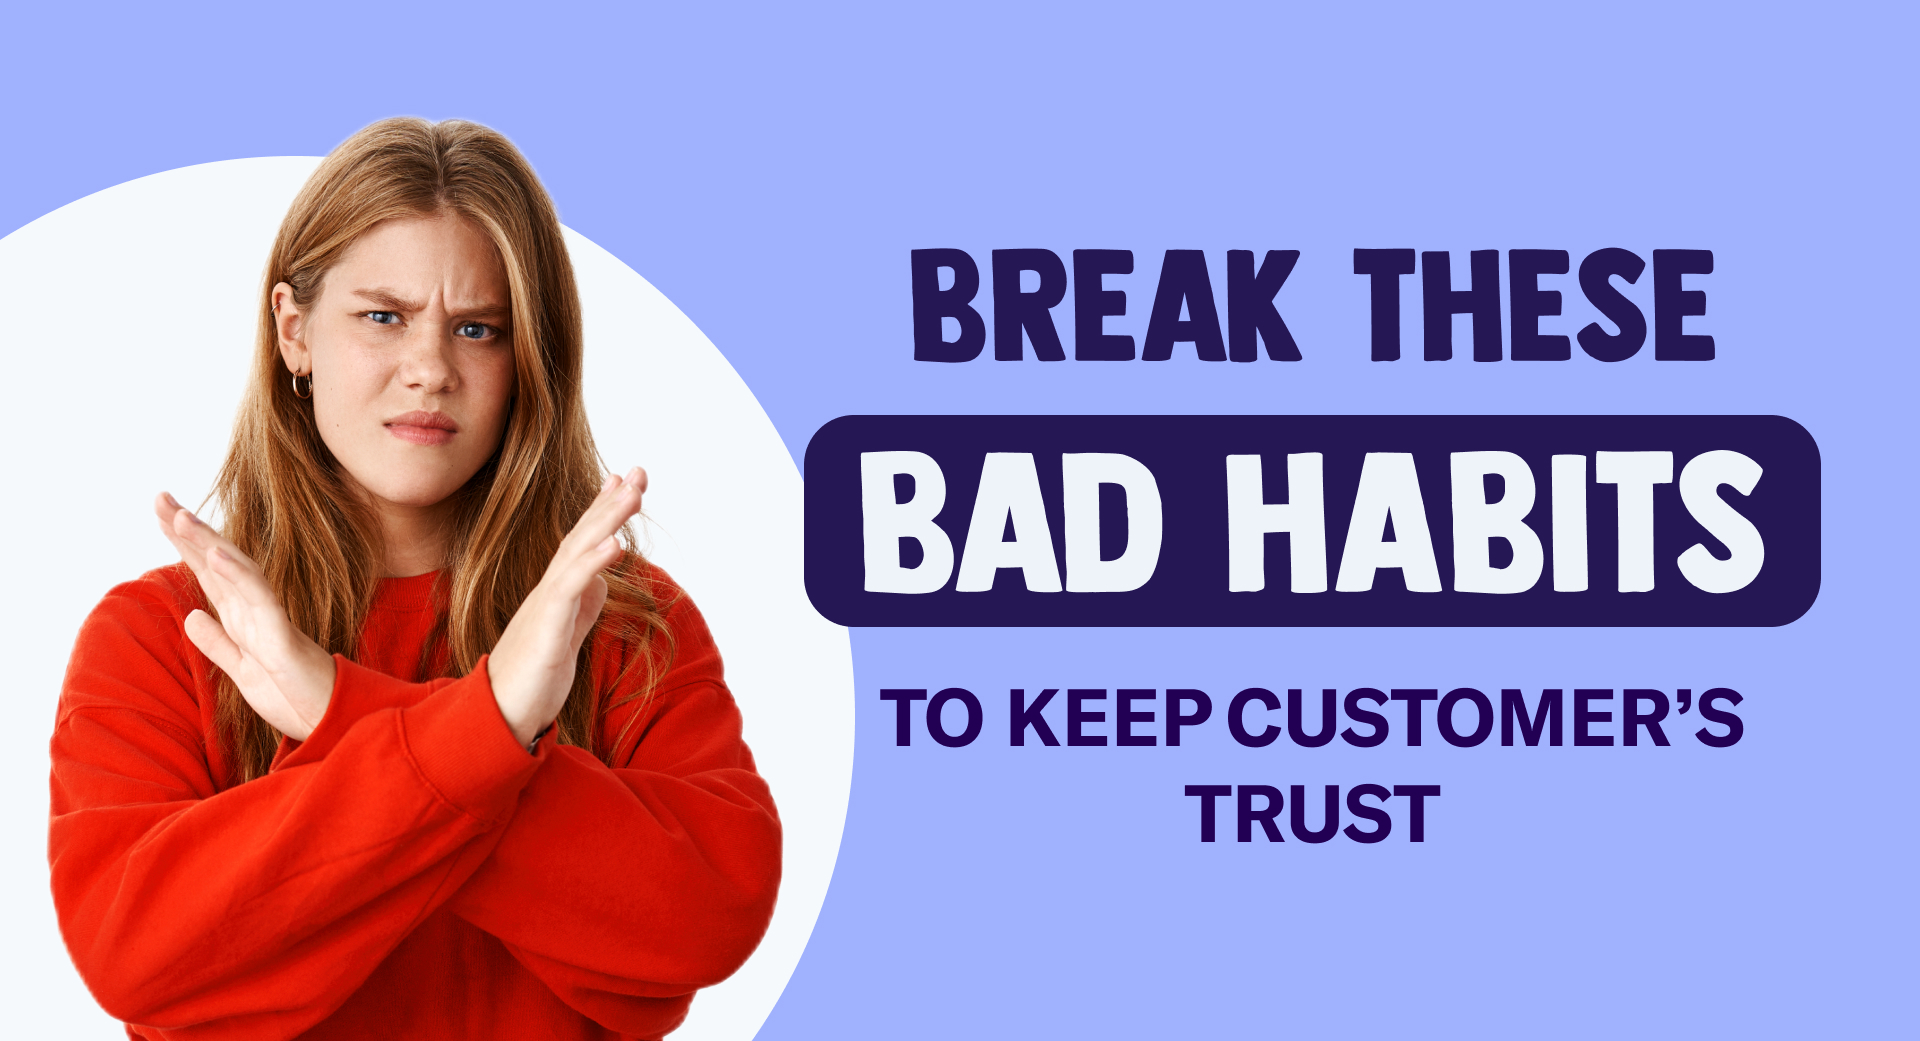 Quebre esses maus hábitos para manter a confiança do cliente